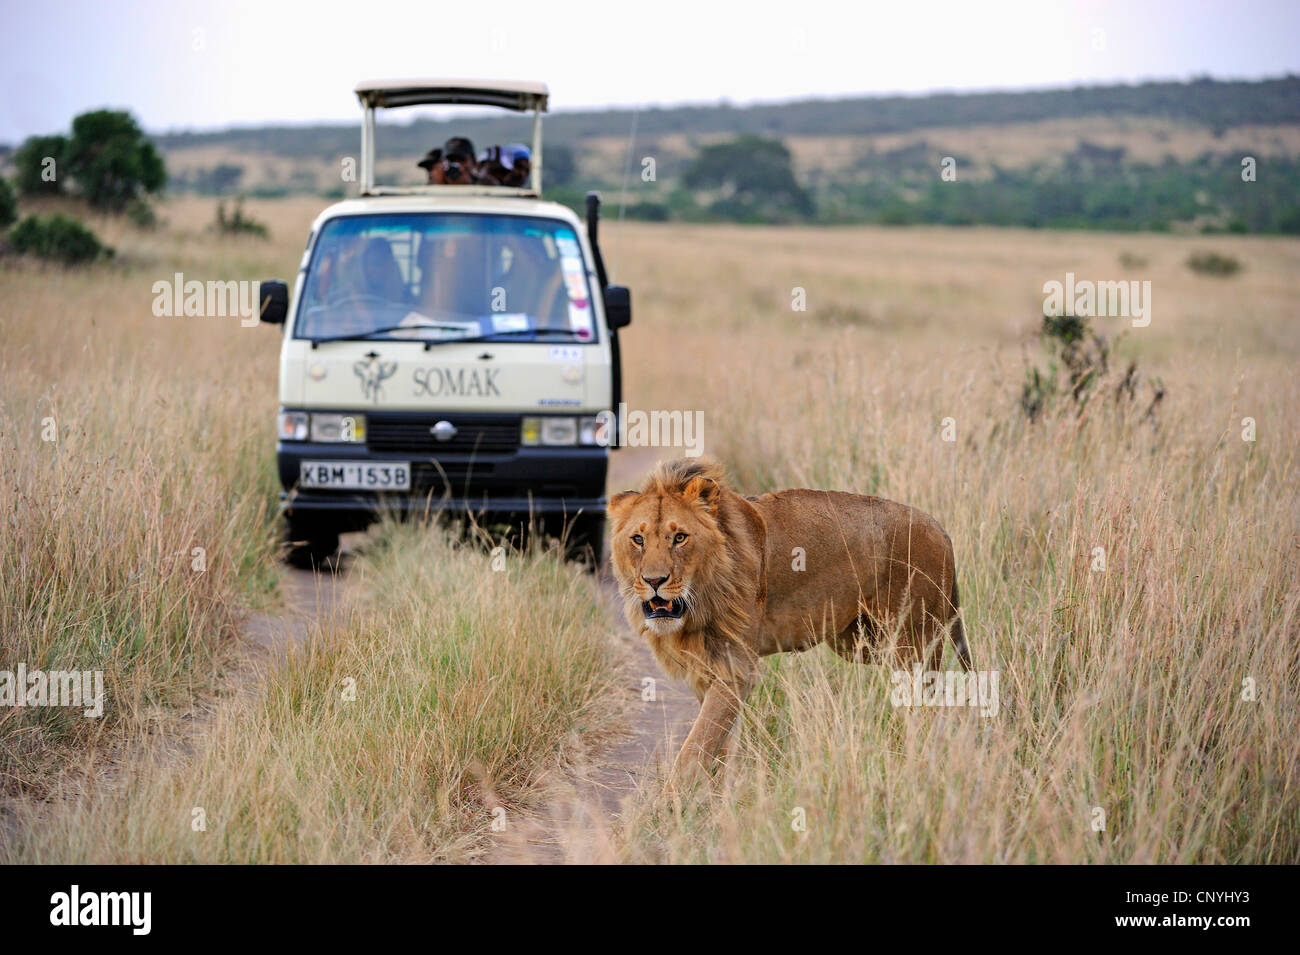 Lion (Panthera leo), lion avec safari voiture dans l'arrière-plan, Kenya, Masai Mara National Park Banque D'Images